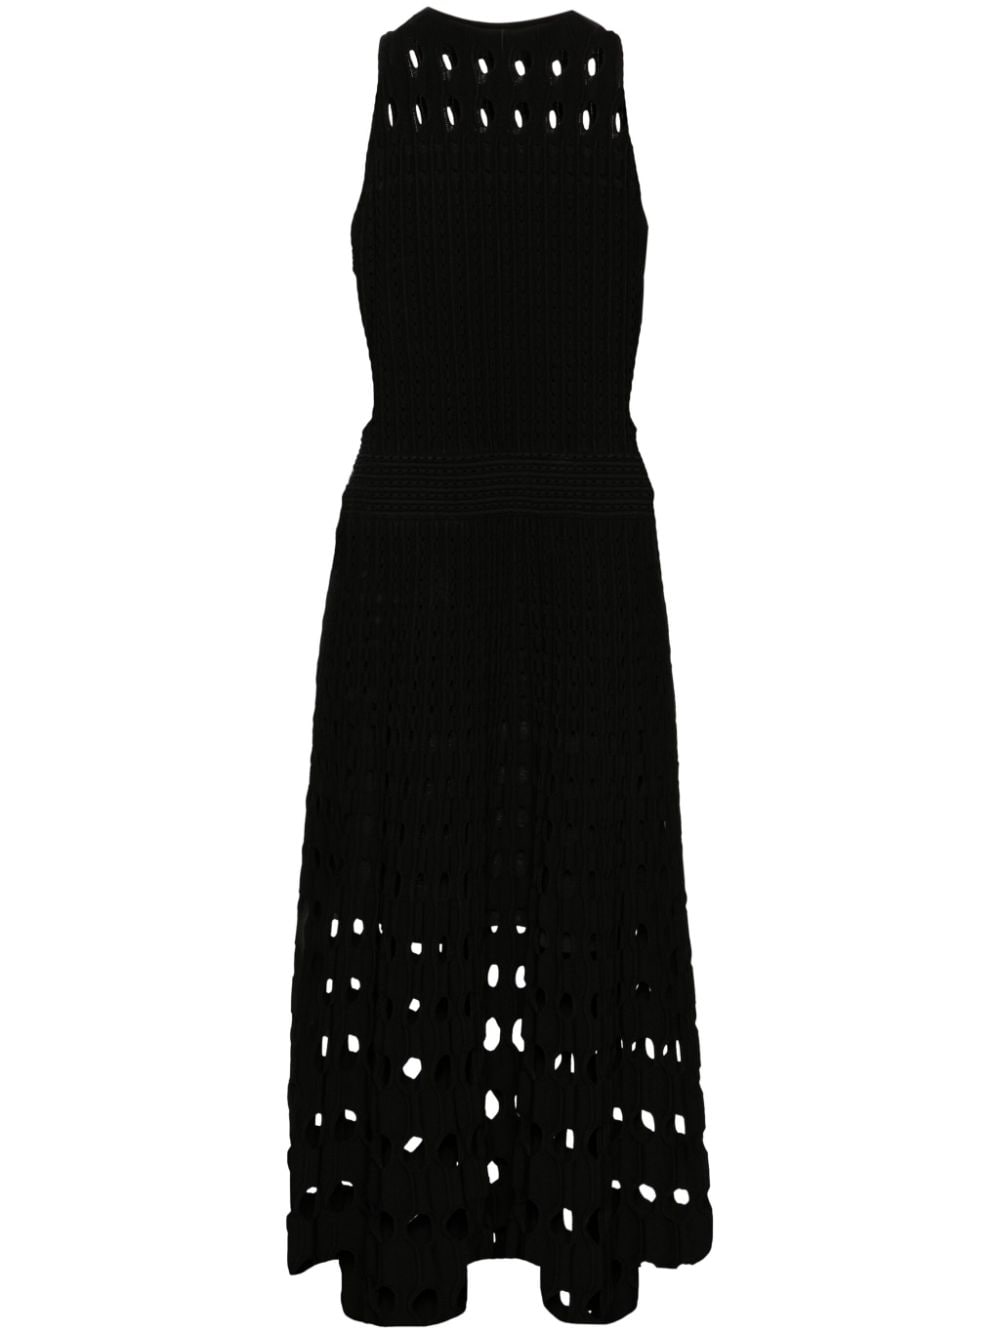 Simkhai Nash open-knit dress - Black von Simkhai